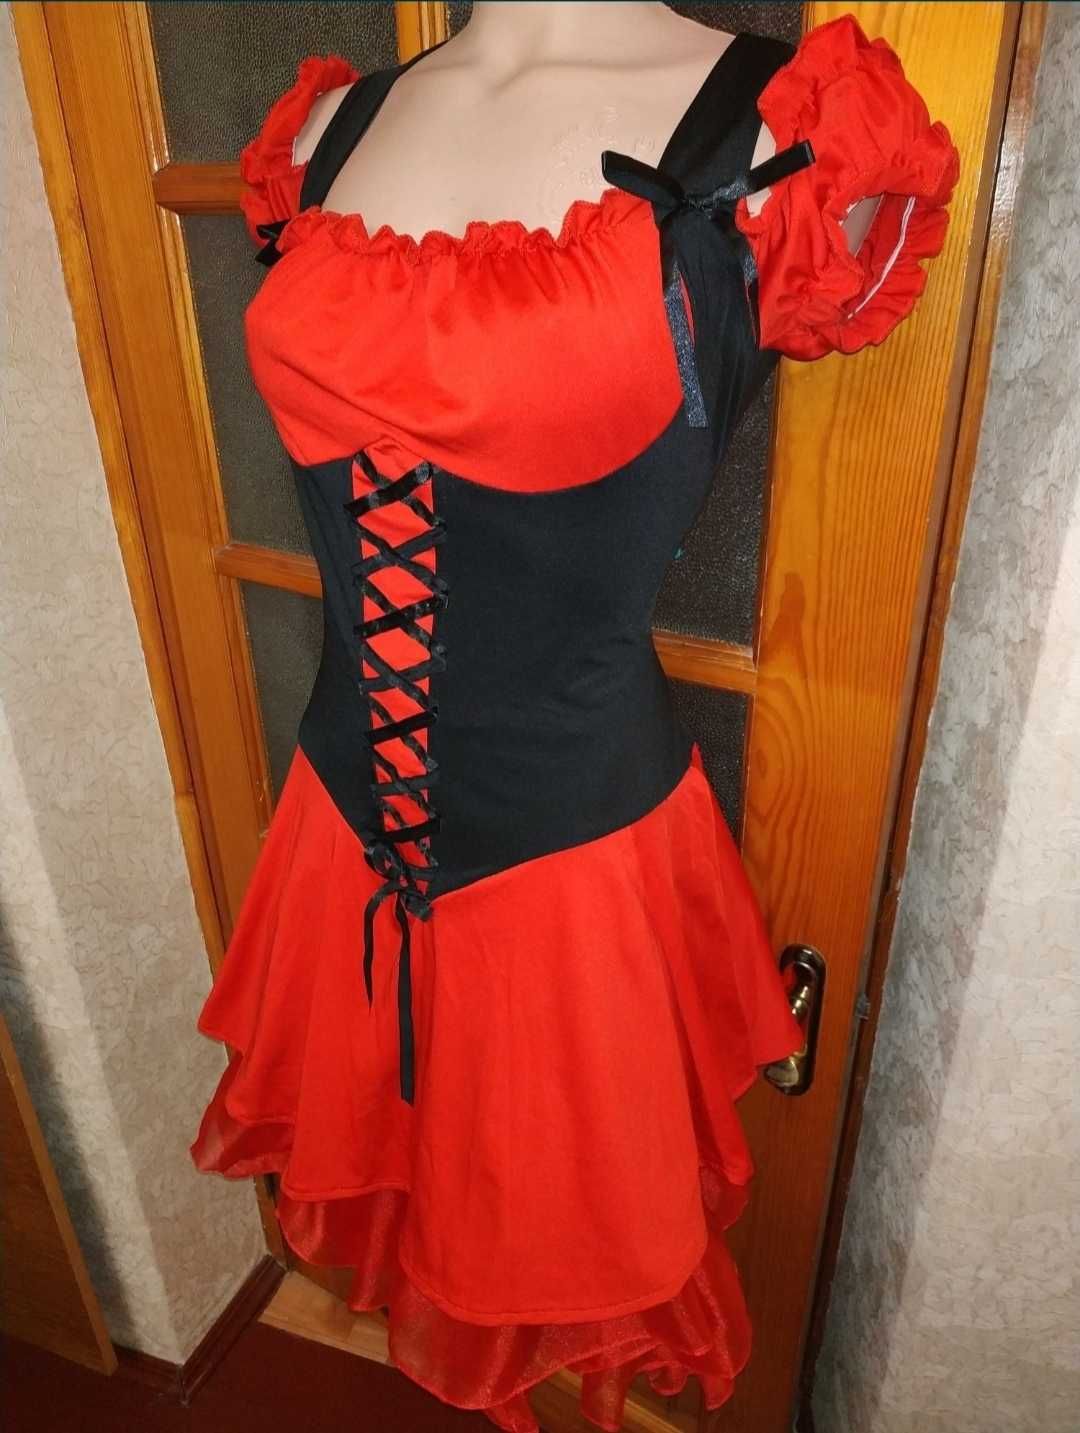 Карнавальное платье дьяволица,Devil,чертовка, красная шапочка, пиратка